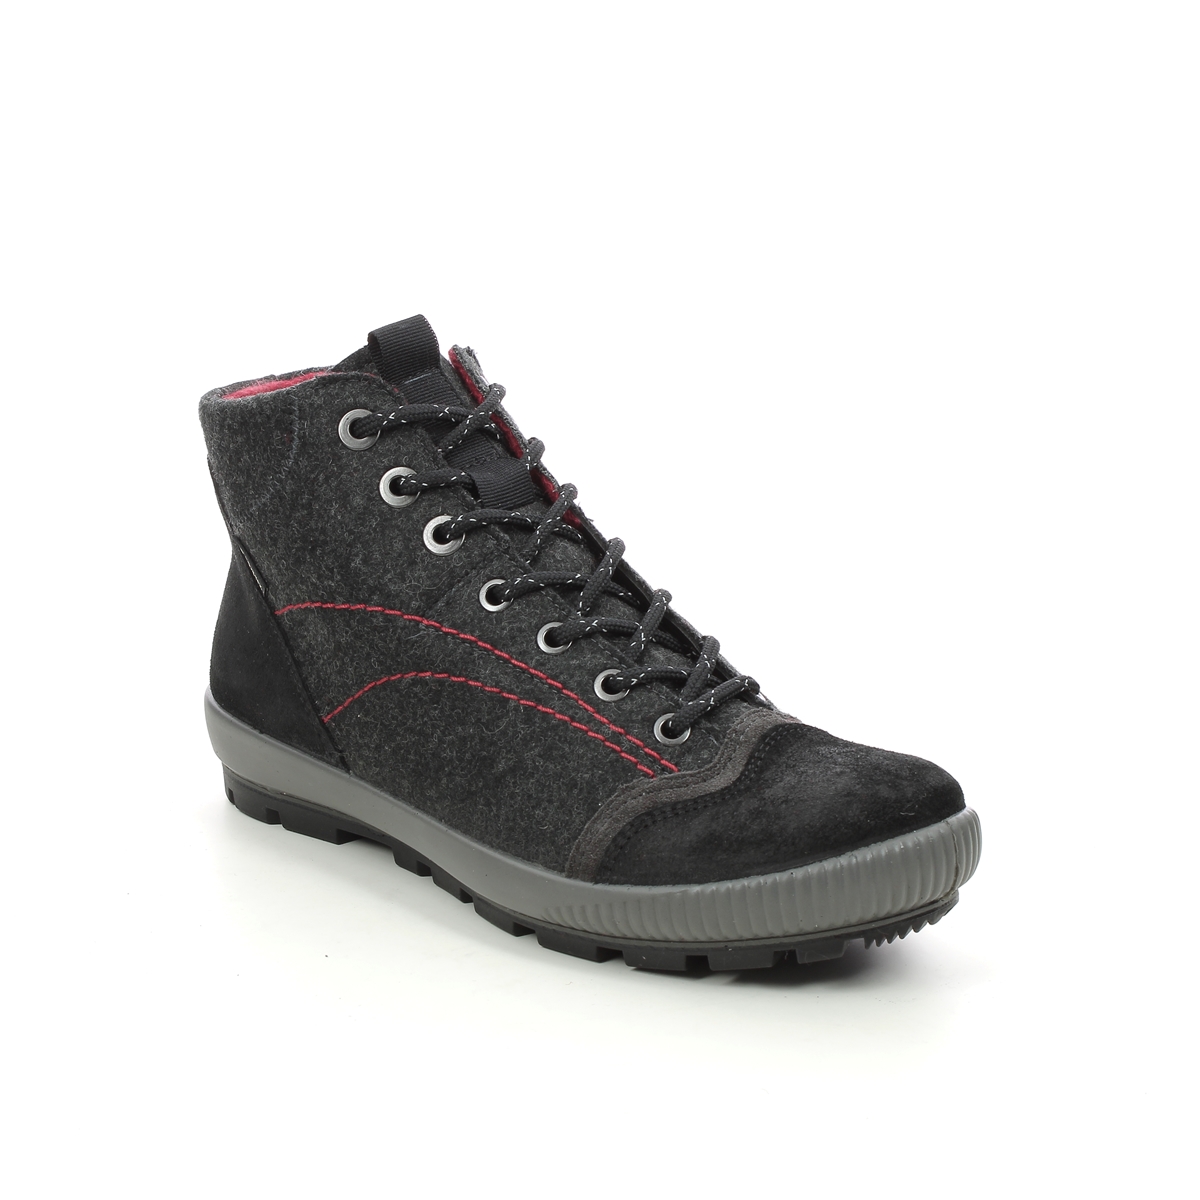 Legero Tanaro Gtx Trek Black Suede Womens Walking Boots 2000123-0000 In Size 7.5 In Plain Black Suede